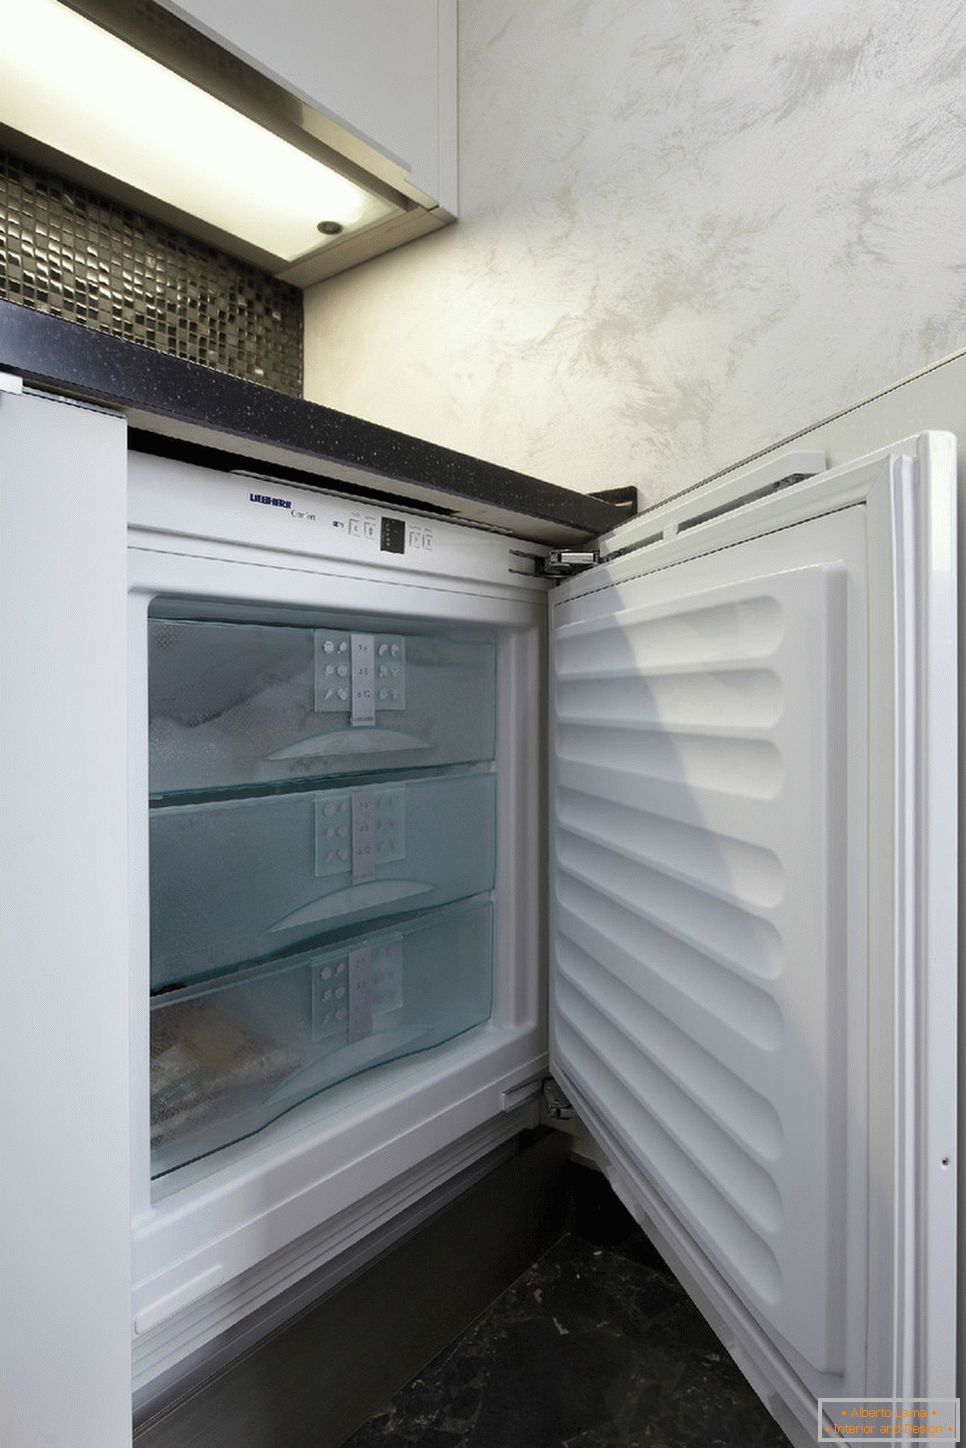 Refrigerador moderno